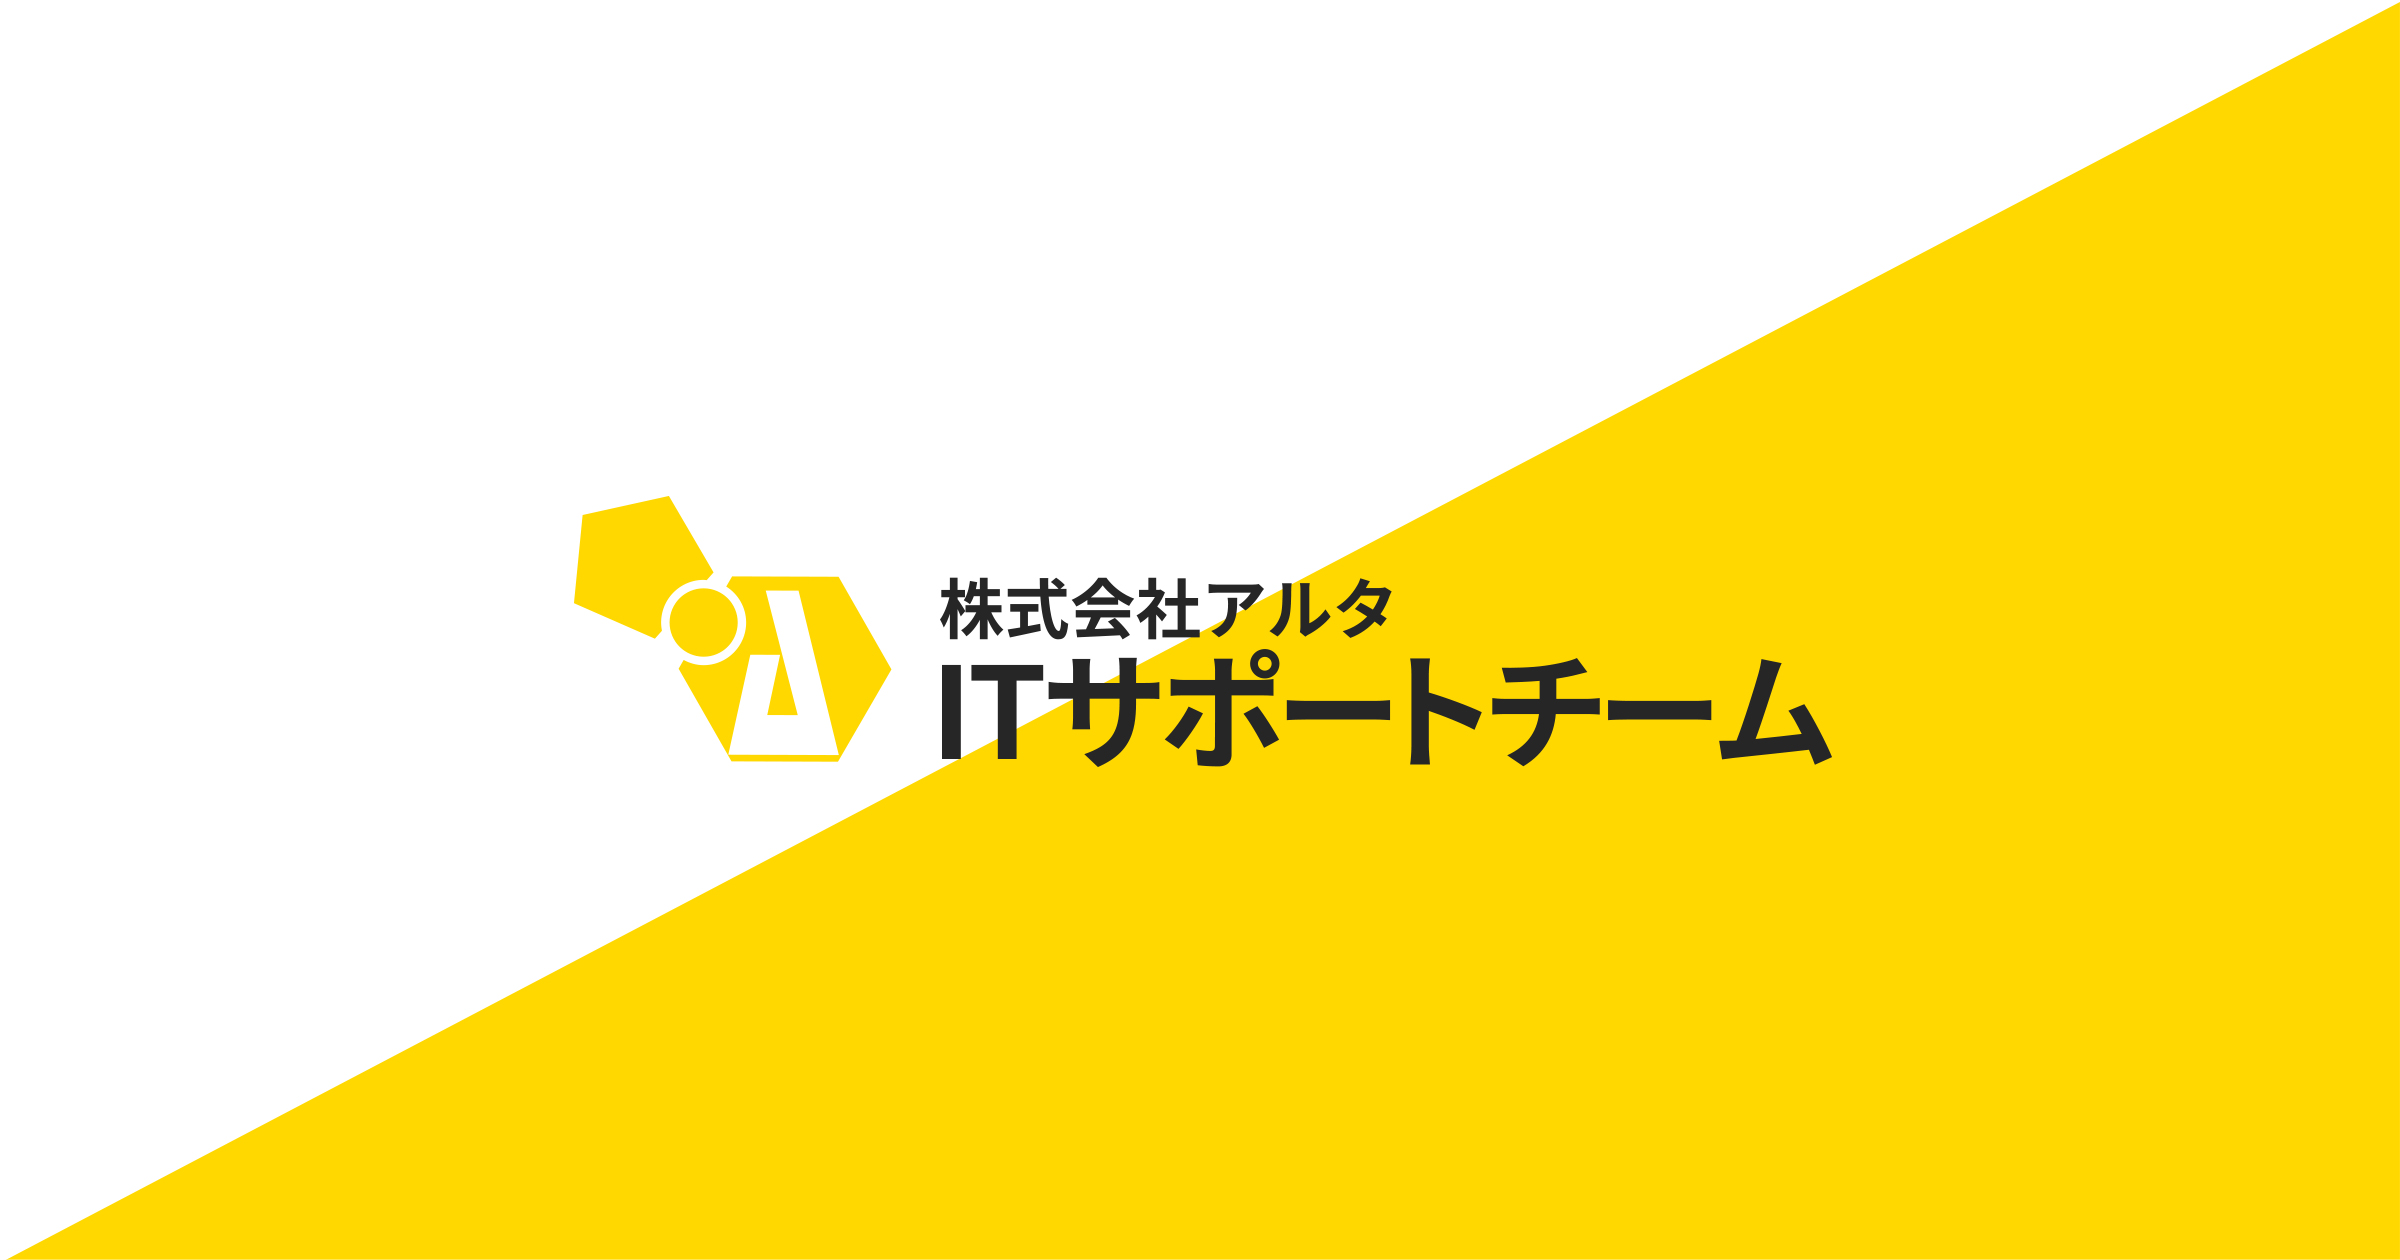 13 株式 会社 システム サポート 名古屋 2025